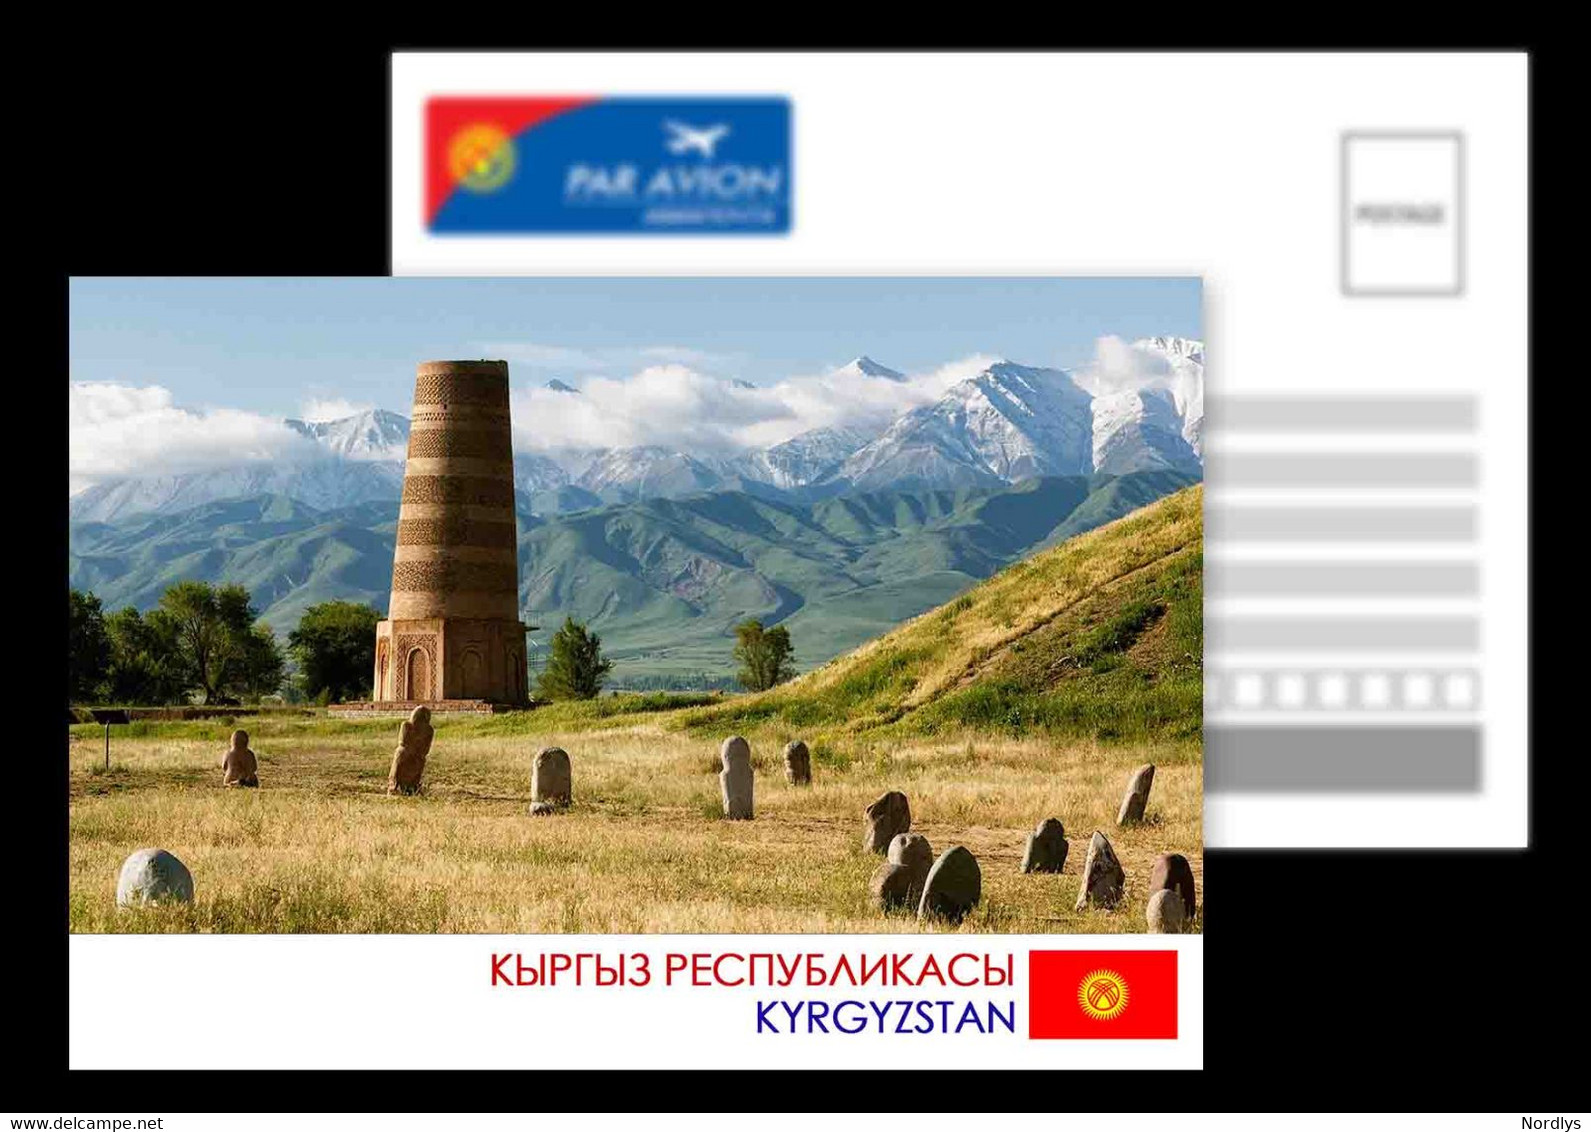 Bishkek / Kyrgyzstan / Postcard / View Card - Kyrgyzstan